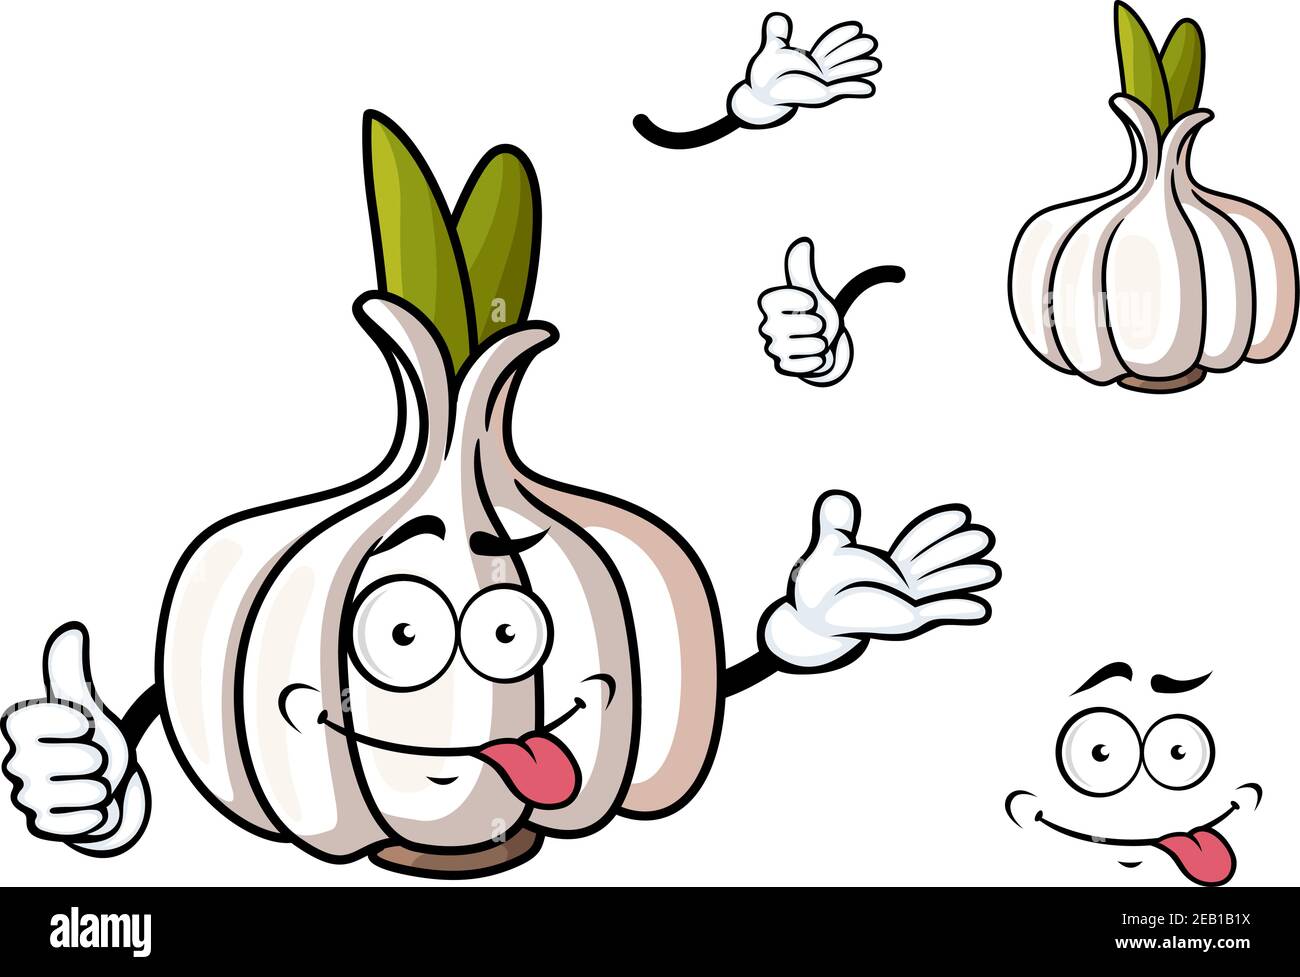 Tête de dessin animé de caractère légume d'ail avec pousses vertes et visage grimace drôle adapté à la nourriture ou à une alimentation saine conception de concept Illustration de Vecteur